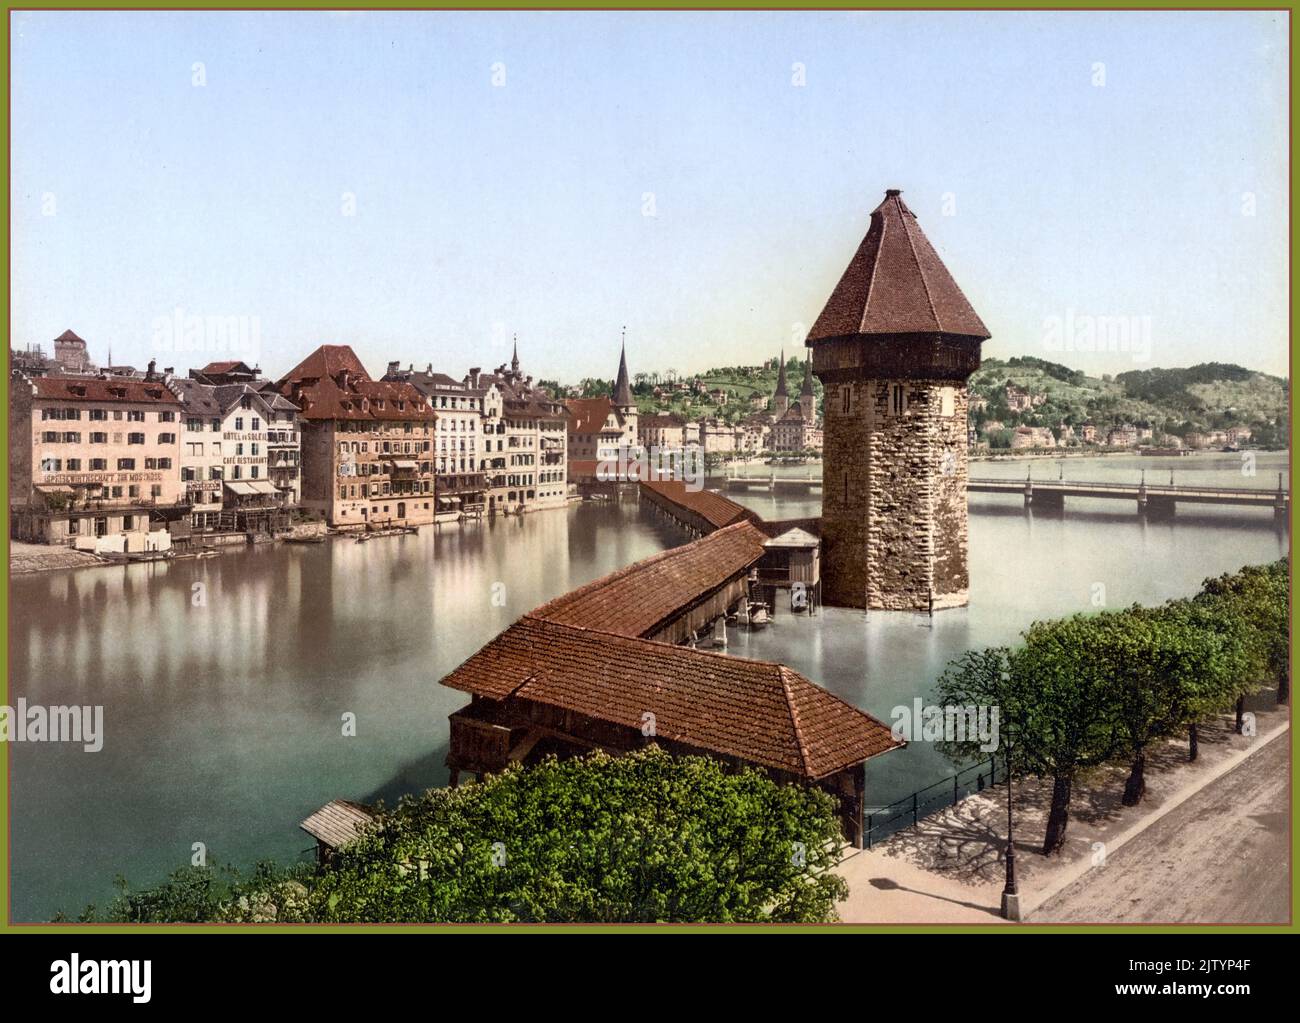 LUCERNA Vintage Photochrom Travel Image 1900s Cappella Ponte Kapellbrücke e acqua Torre Wasserturm, Lucerna, Svizzera Photochrom Foto Stock